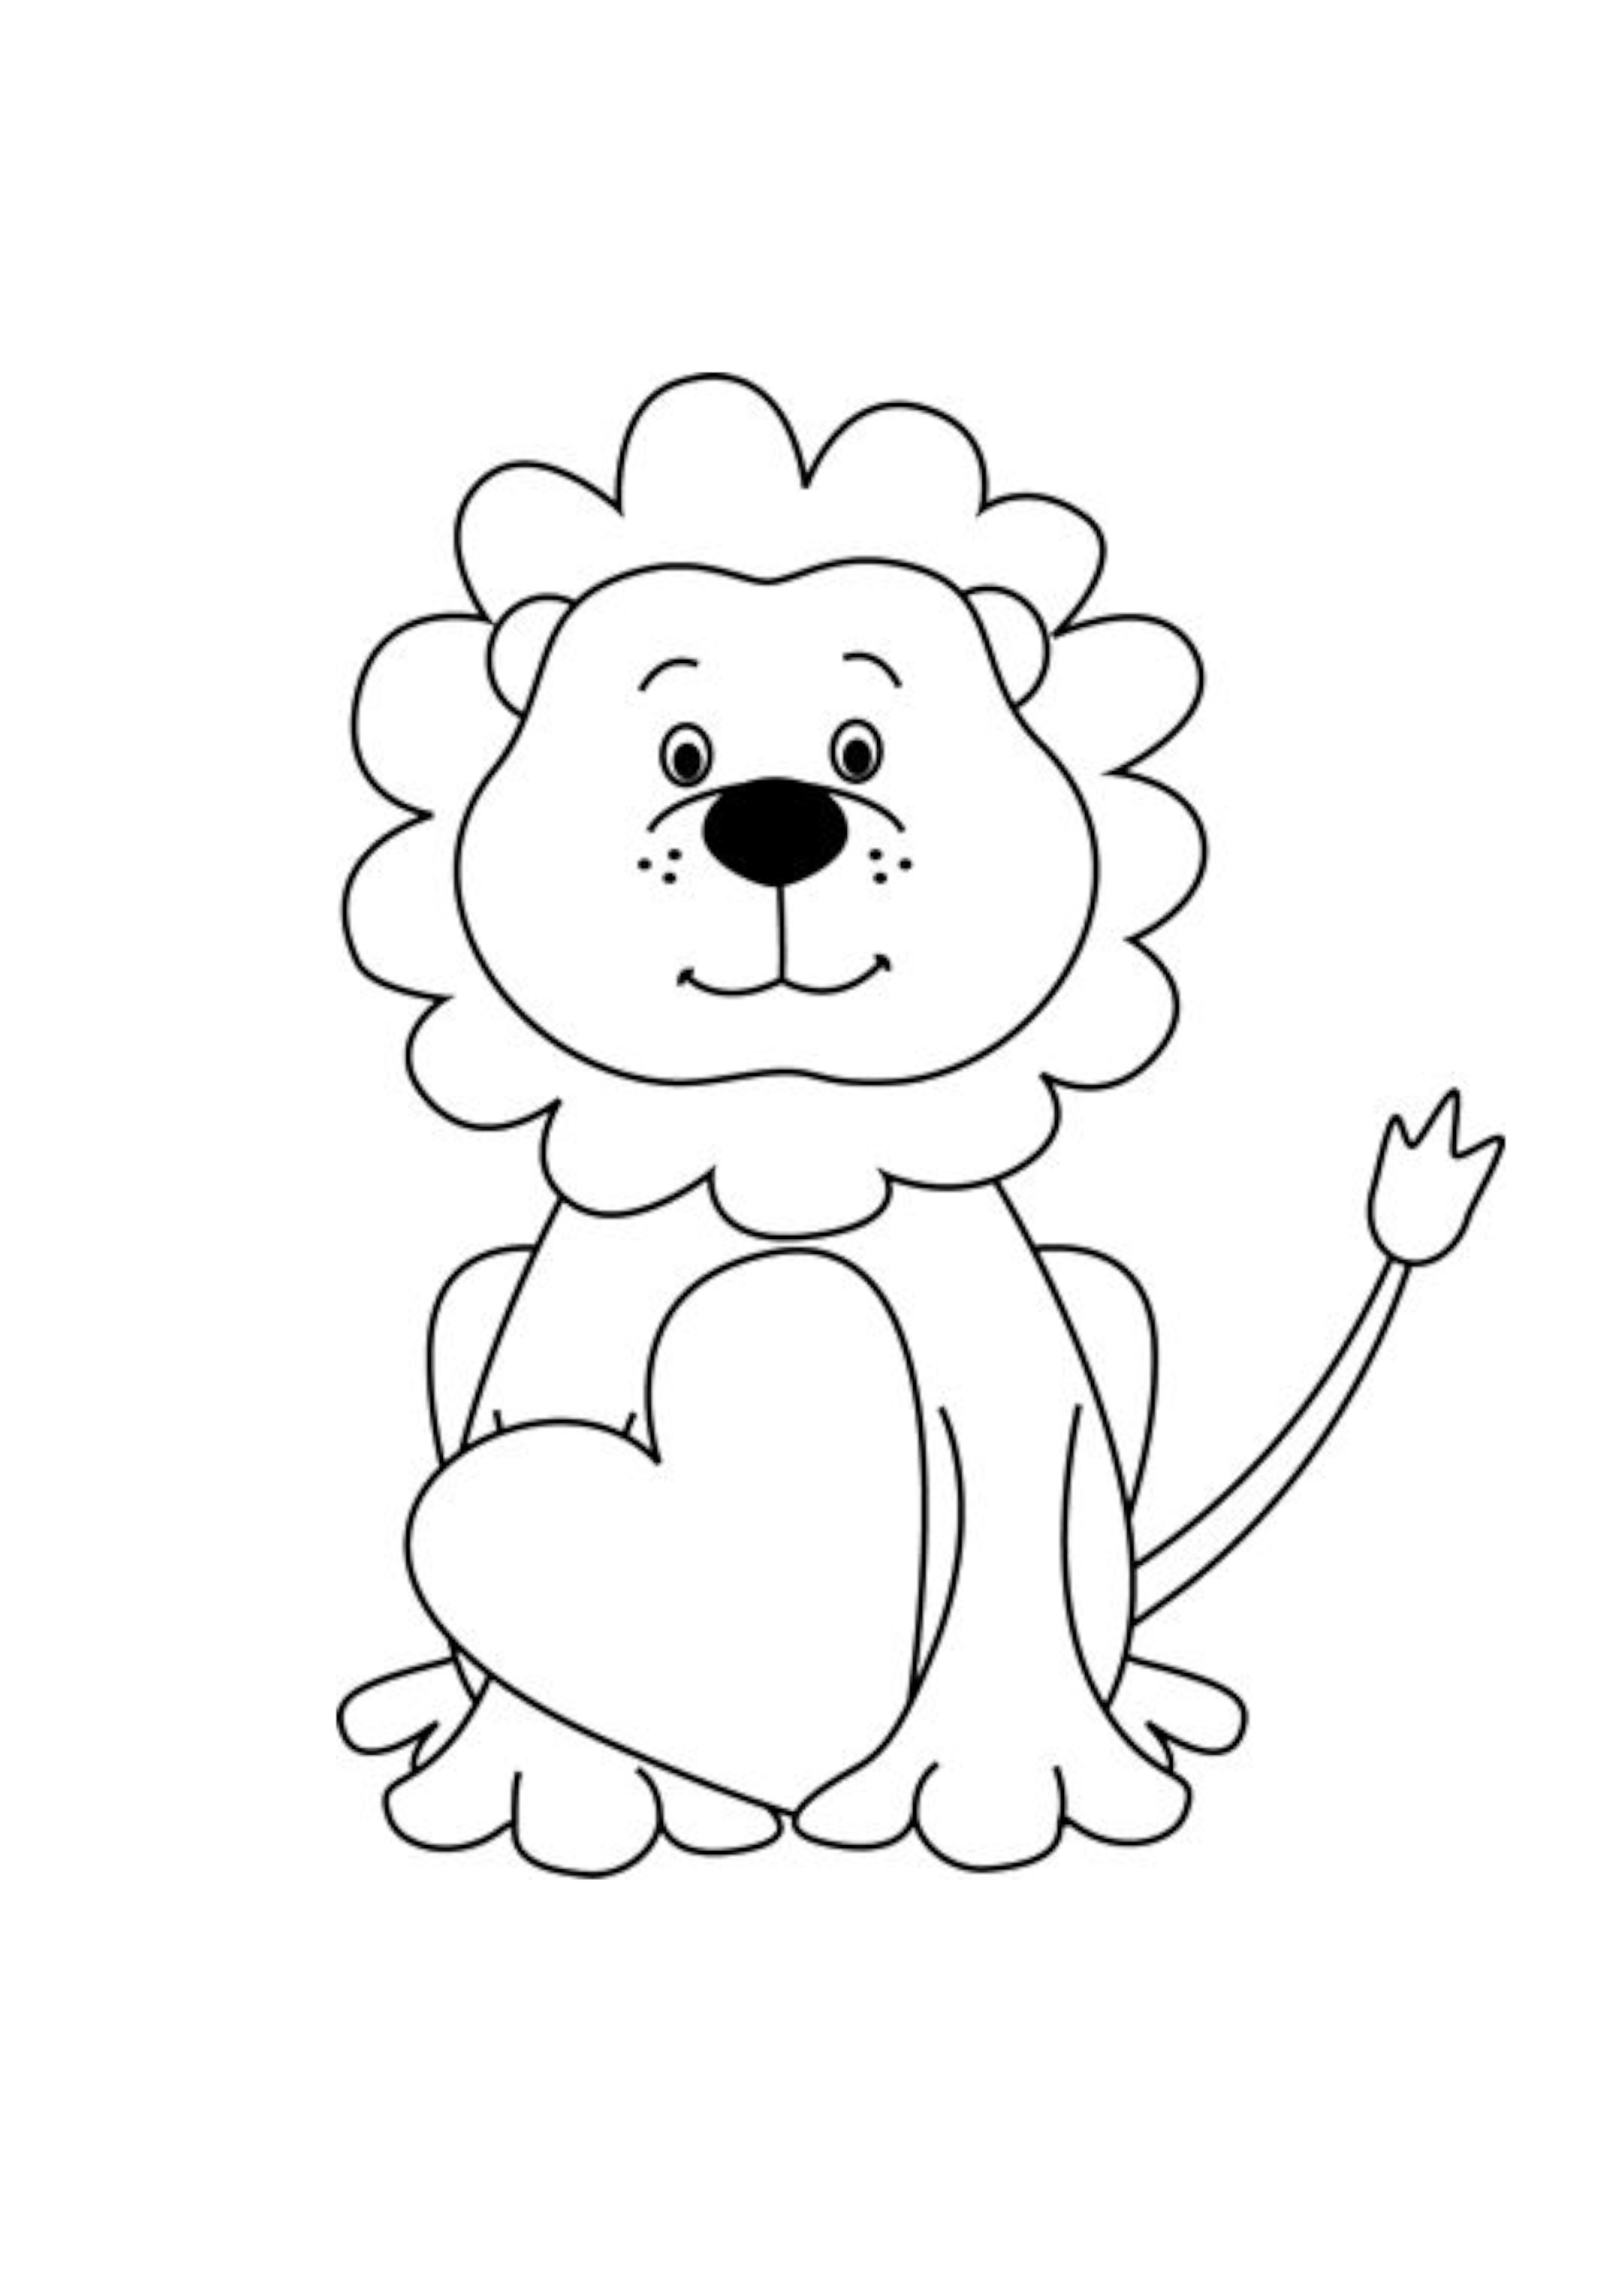 Tranh tô màu hình con sư tử mạnh mẽ đáng yêu cho bé  Trường Tiểu học Thủ  Lệ